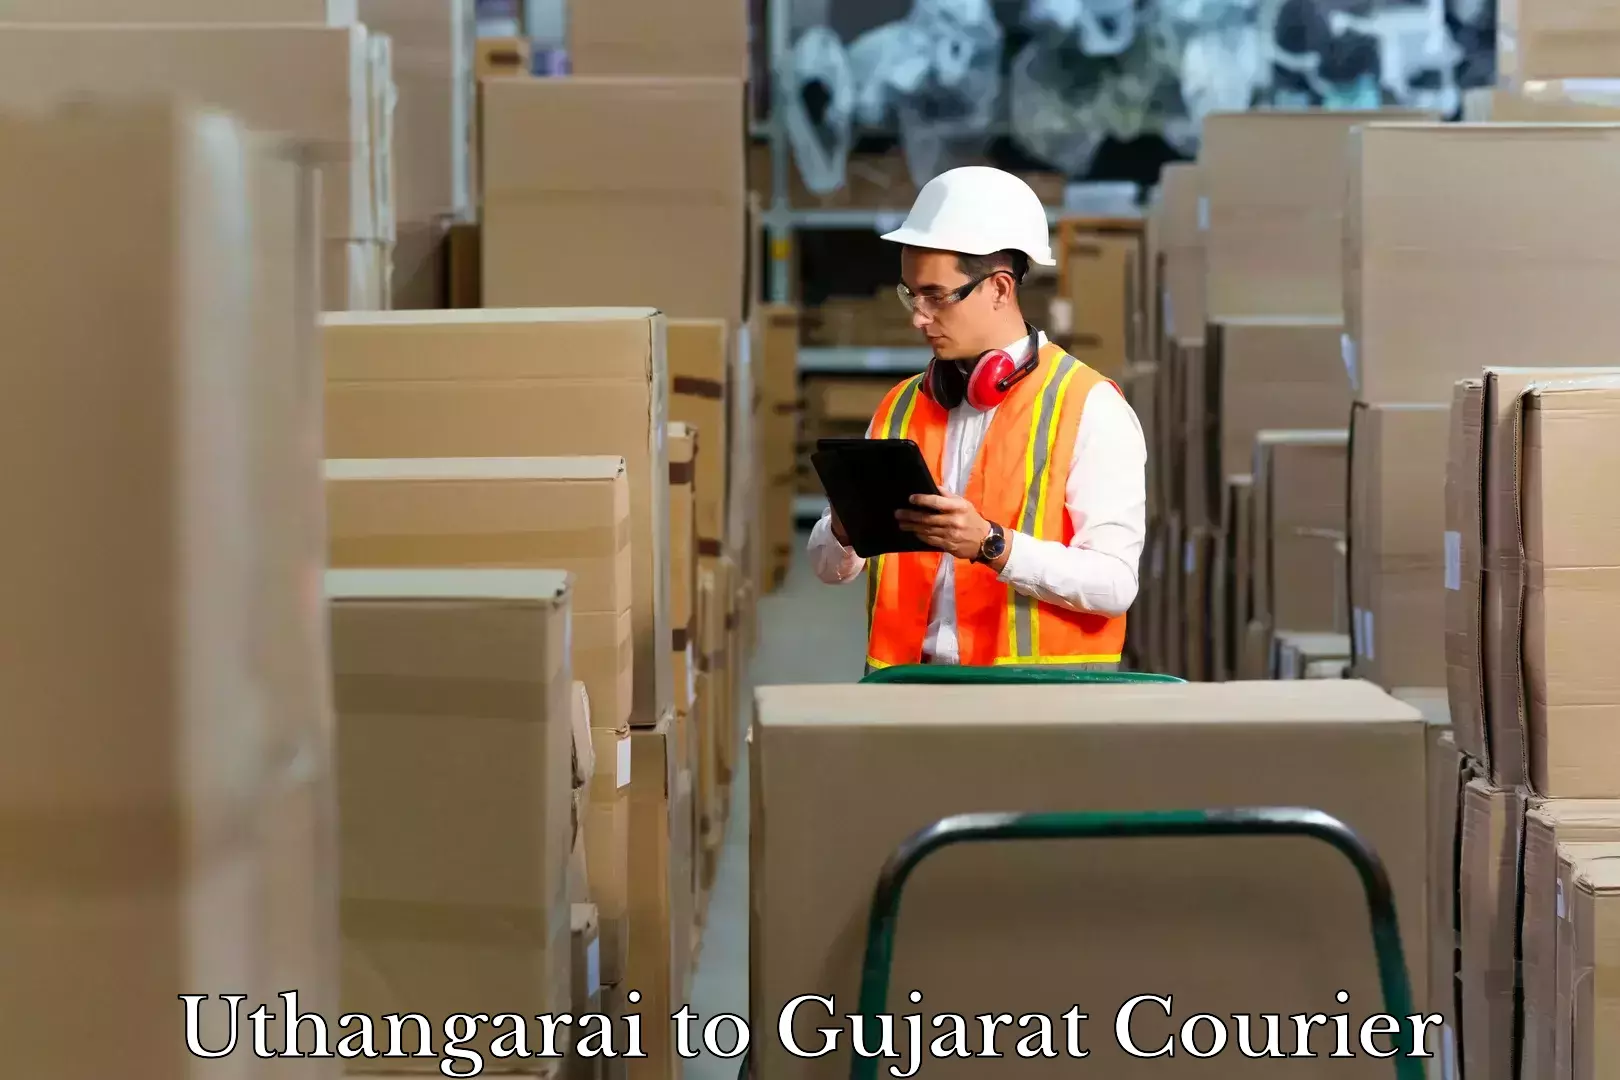 Baggage transport scheduler Uthangarai to Narmada Gujarat